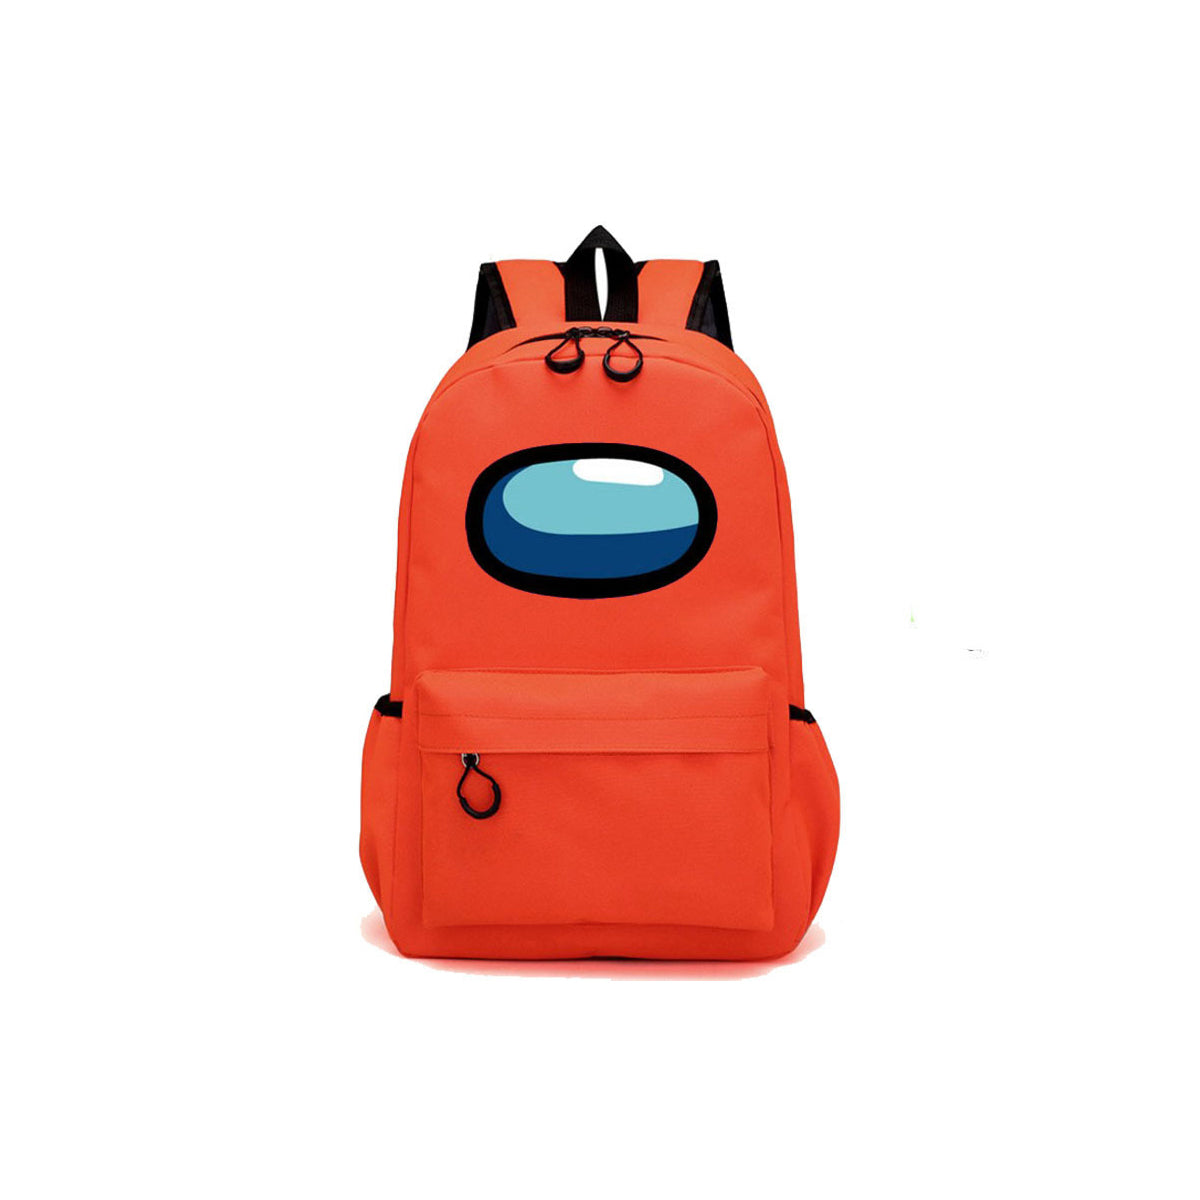 Durable Multifunctional Casual Shoulders Bag Backpack